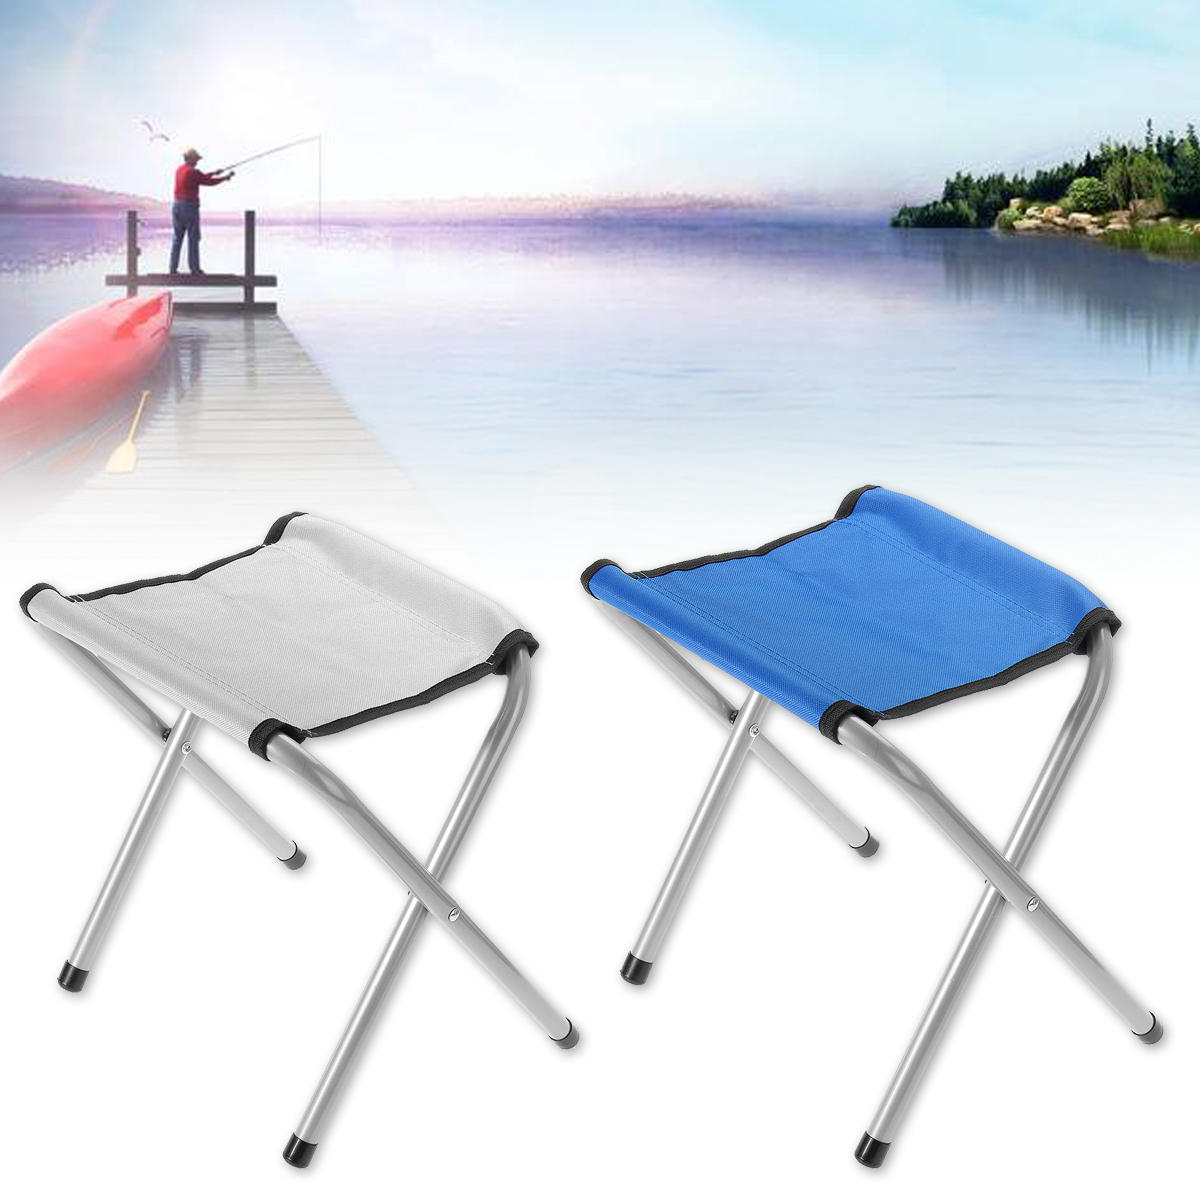 35cm draagbare outdoor klapstoel buiten reizen wandelen camping stoel vissen strand bbq kruk